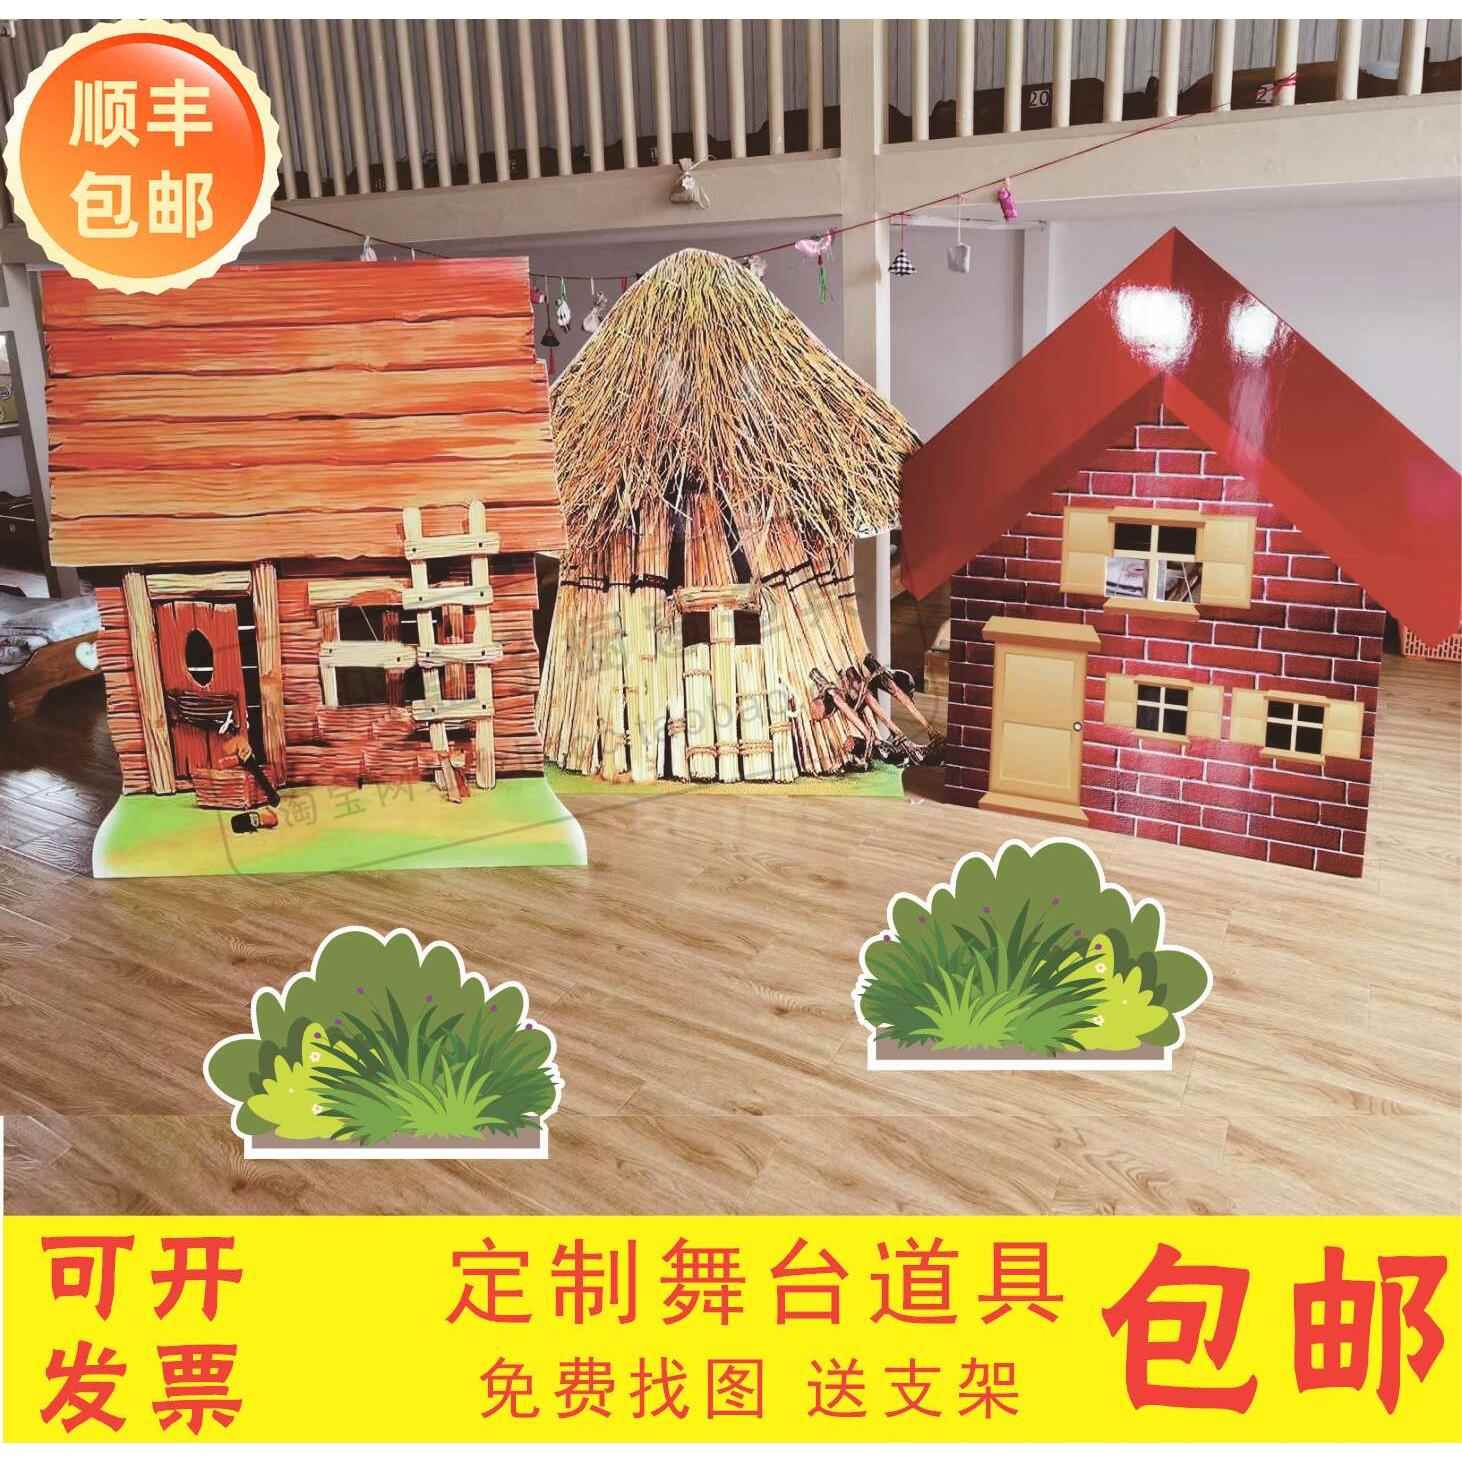 KT板三只小猪房子森林树蘑菇栅栏儿童情景剧舞台表演背景布置道具